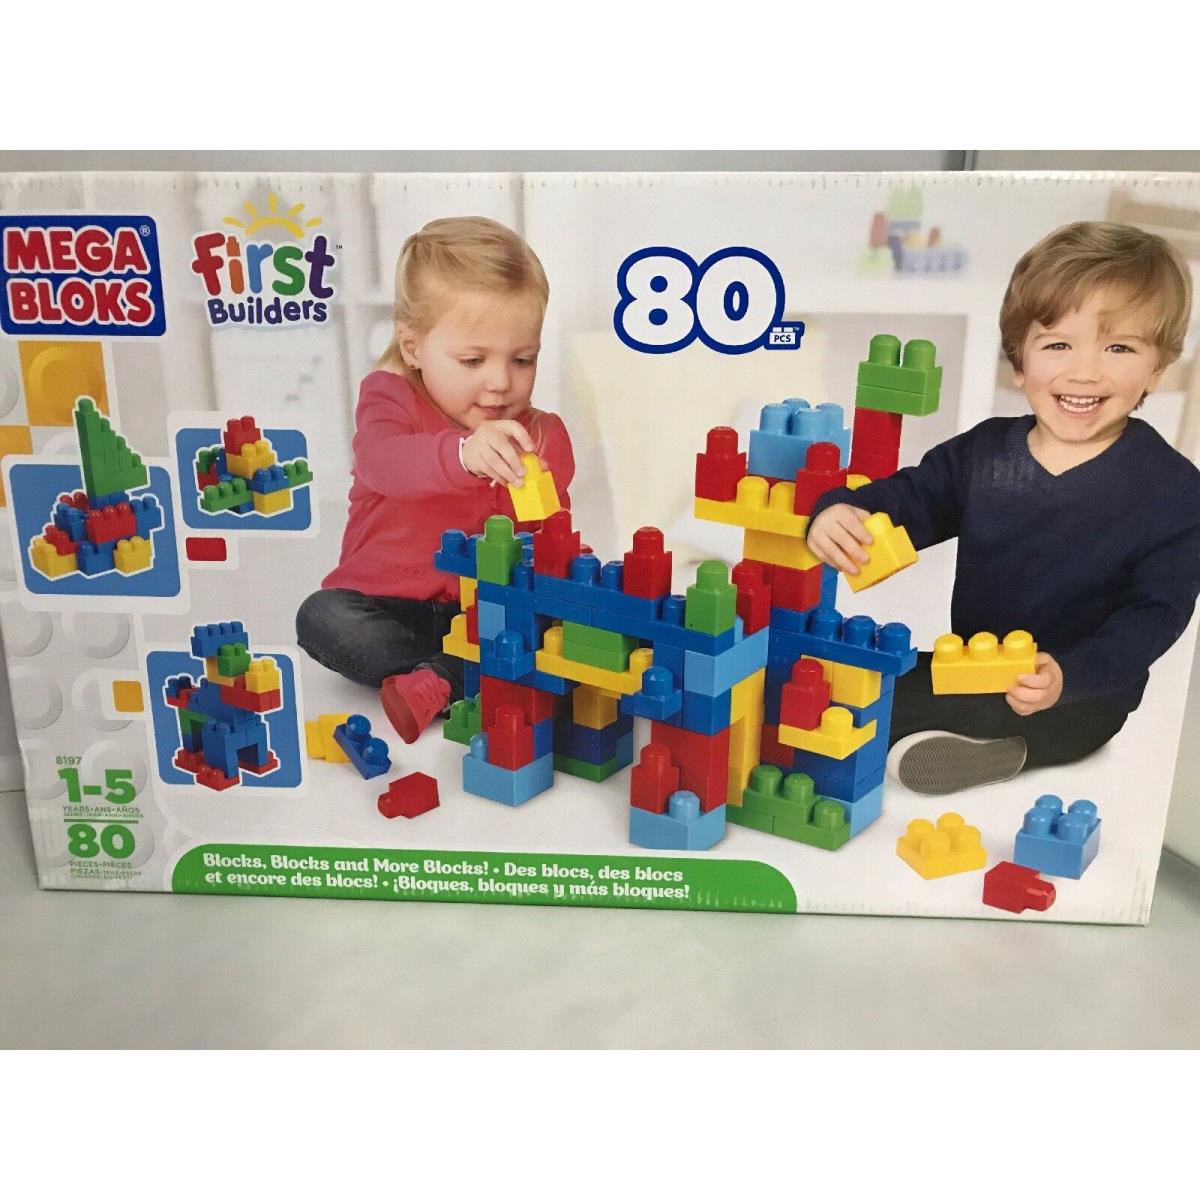 Mega Bloks First Builders 80 Pcs. 8197